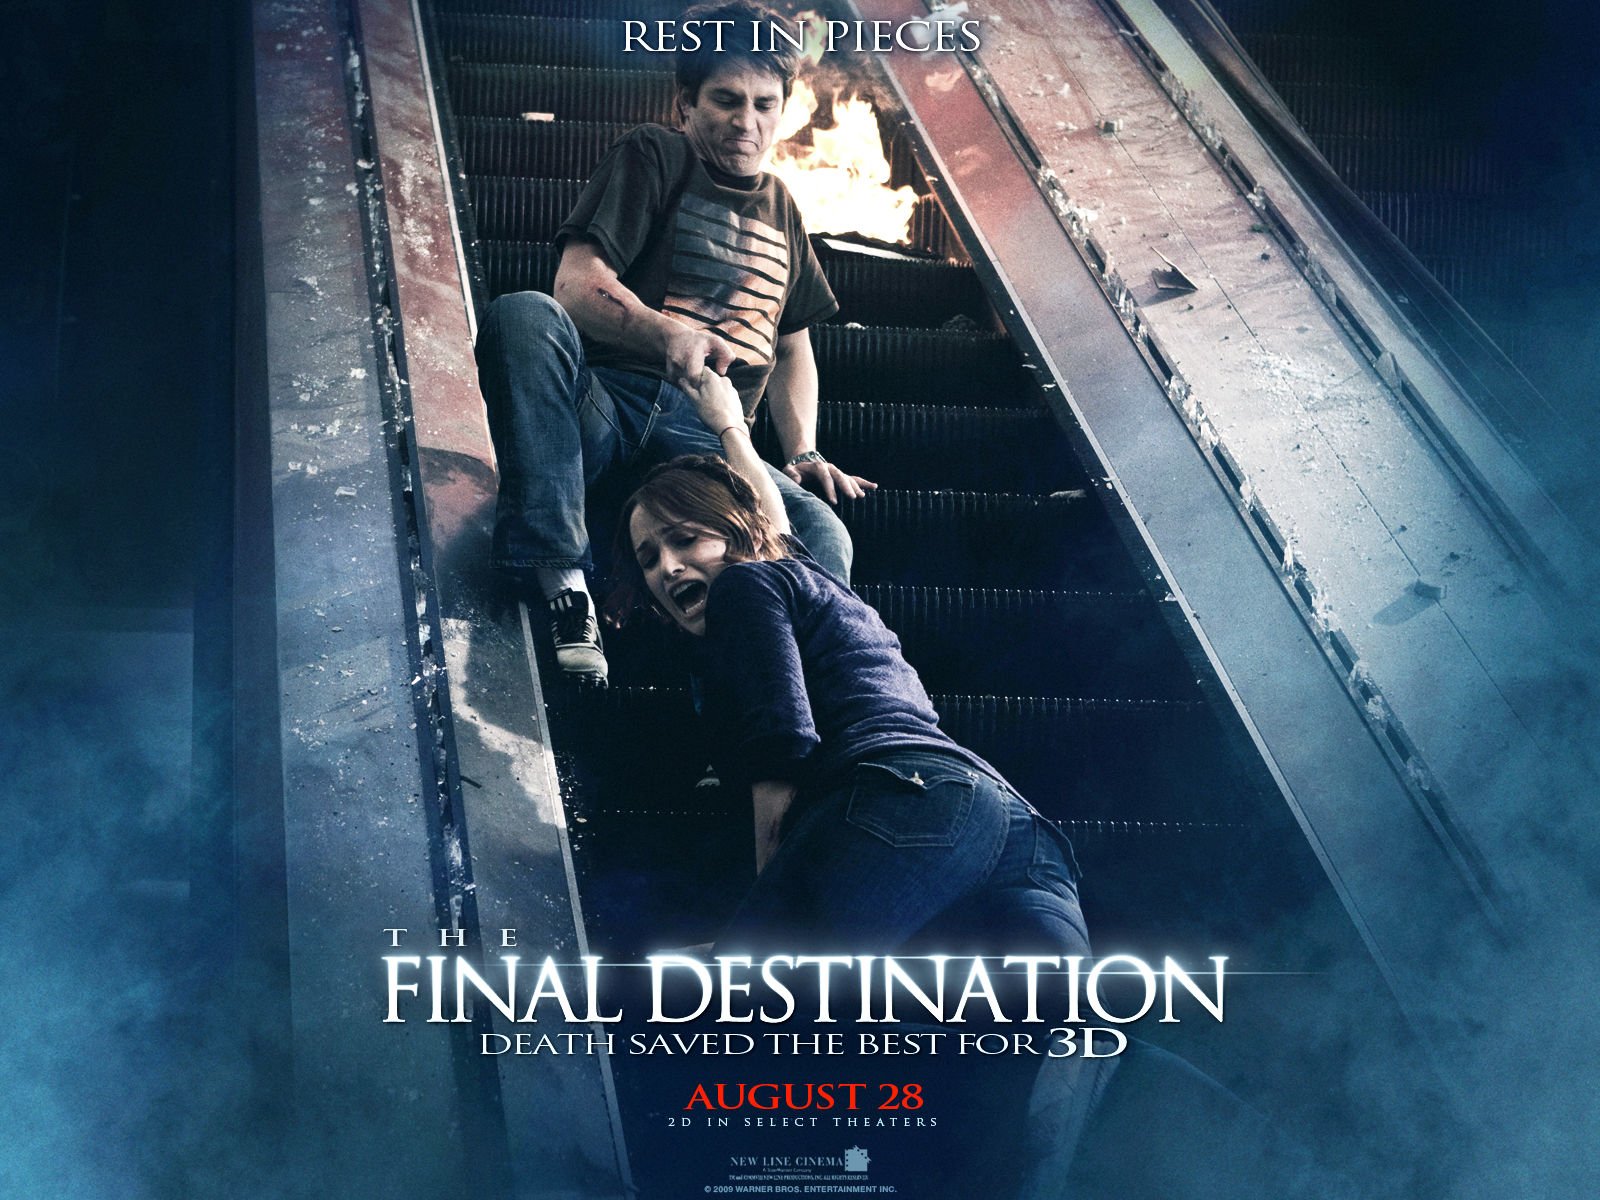 final destination movies 6